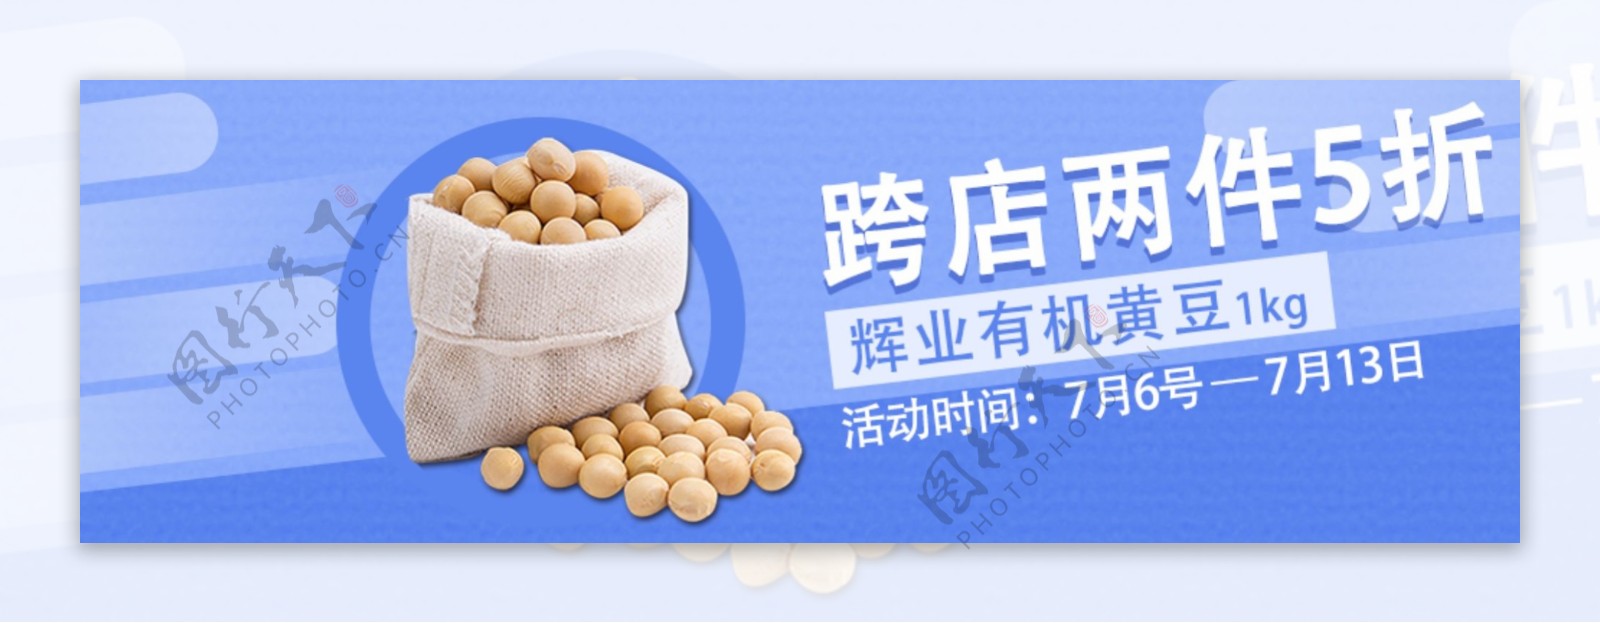 黄豆海报banner淘宝电商食品